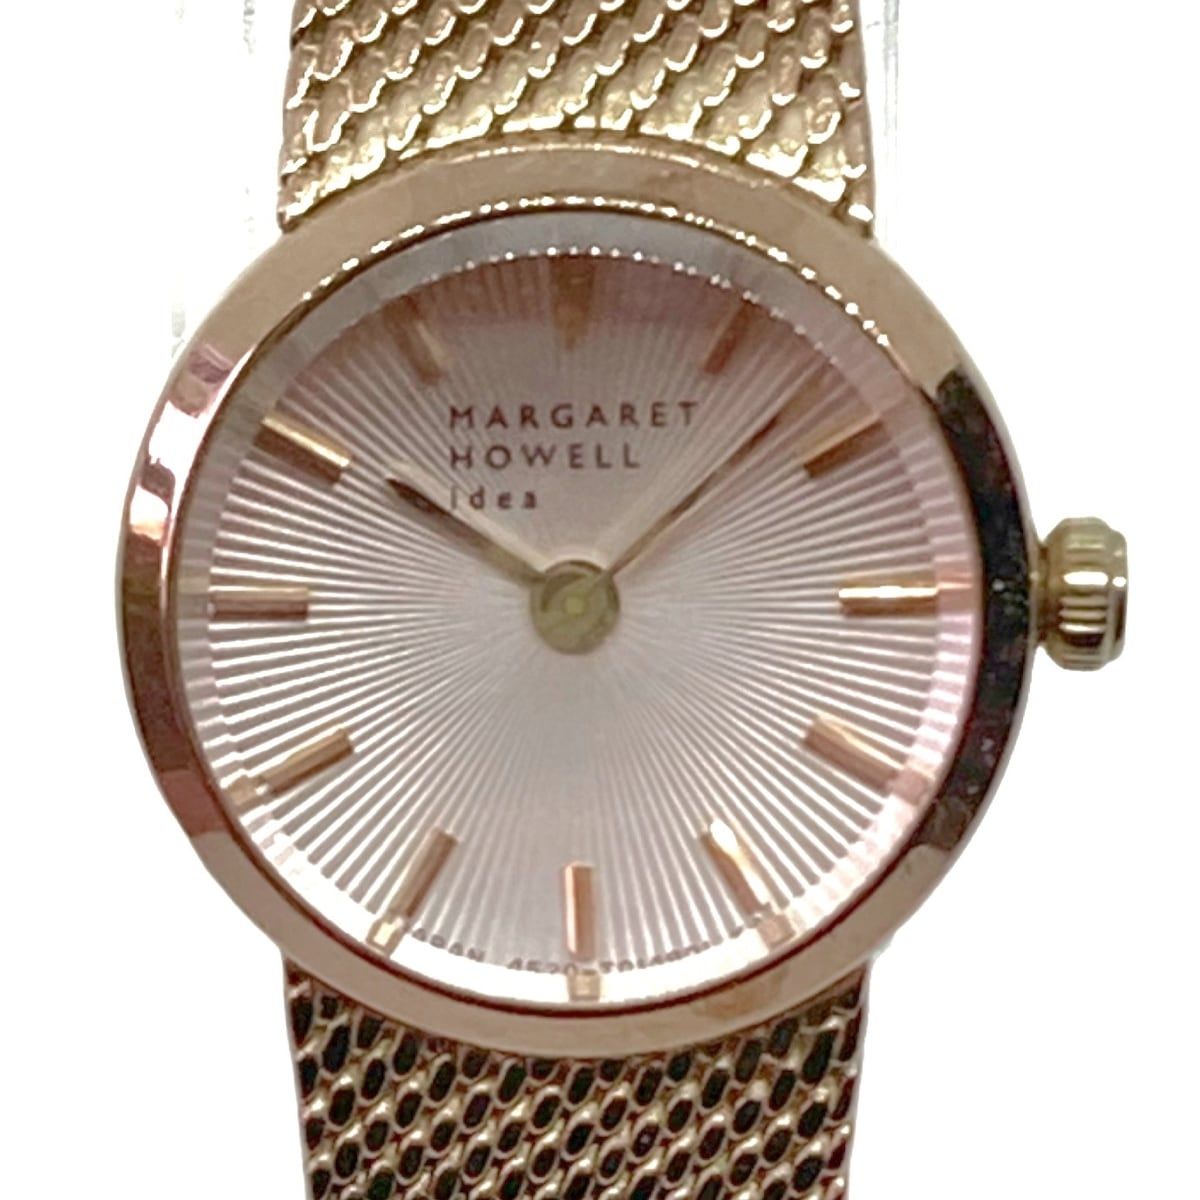 MargaretHowell(マーガレットハウエル) 腕時計美品 - 4520-T019501 レディース シルバー